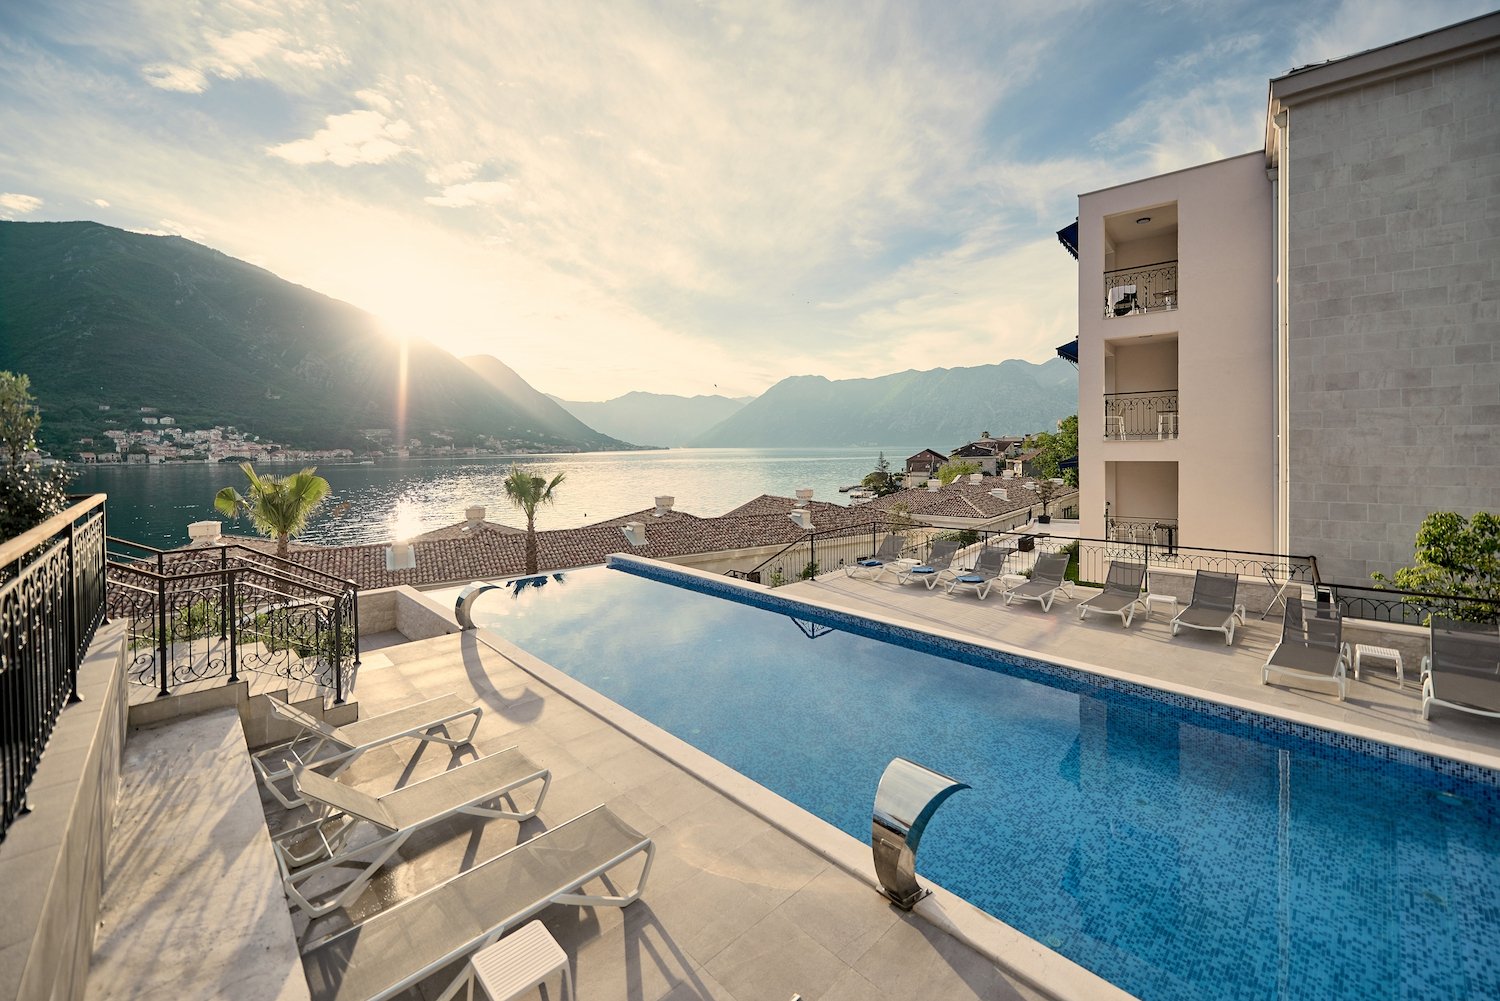 Top Luxury Resorts in Montenegro